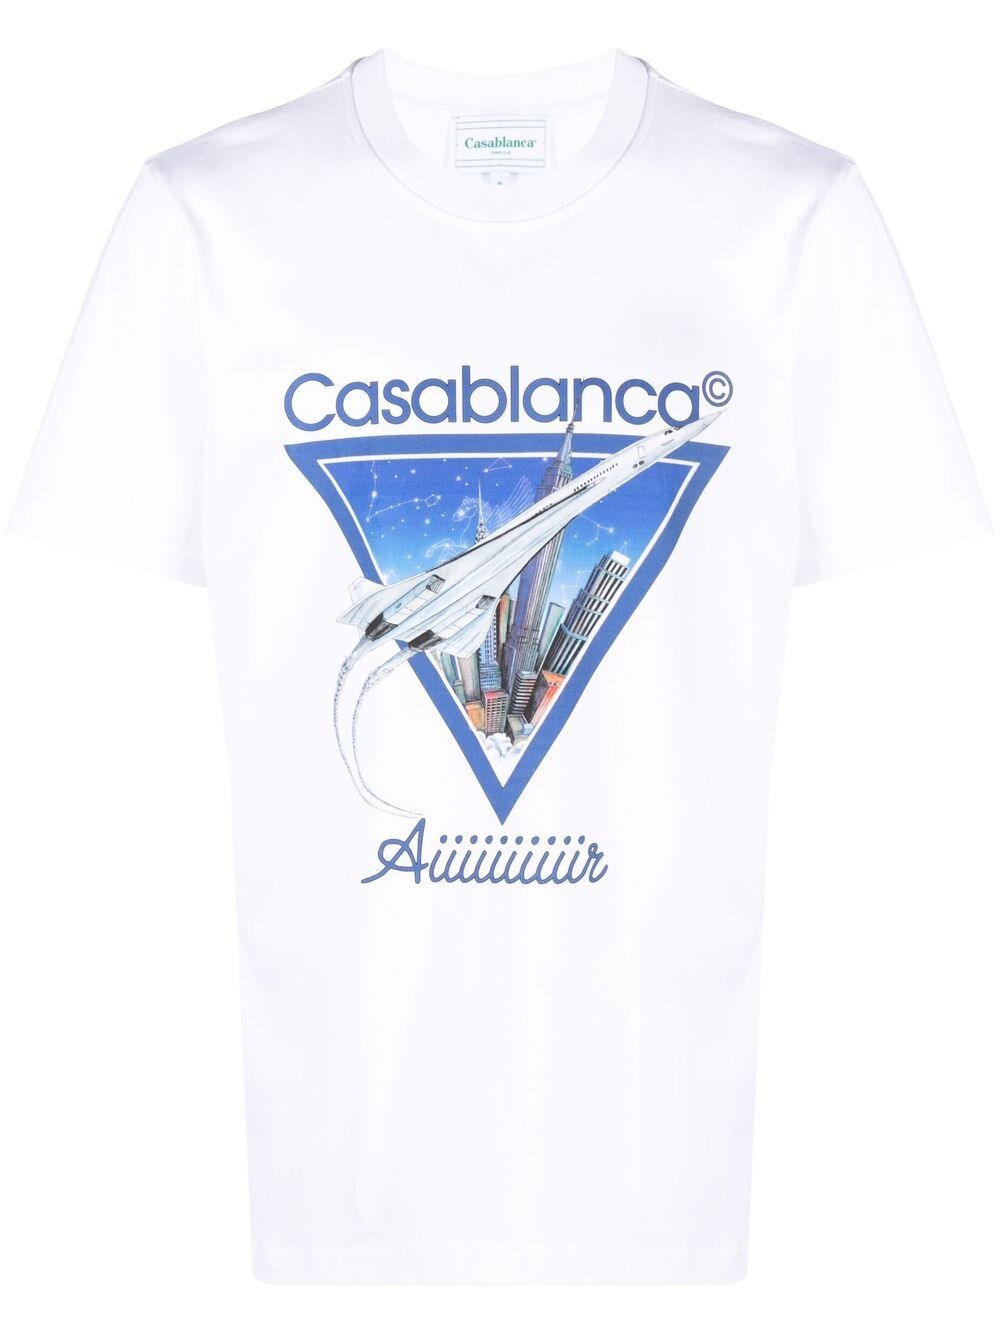 Casablanca Aiiiiir T Shirt White